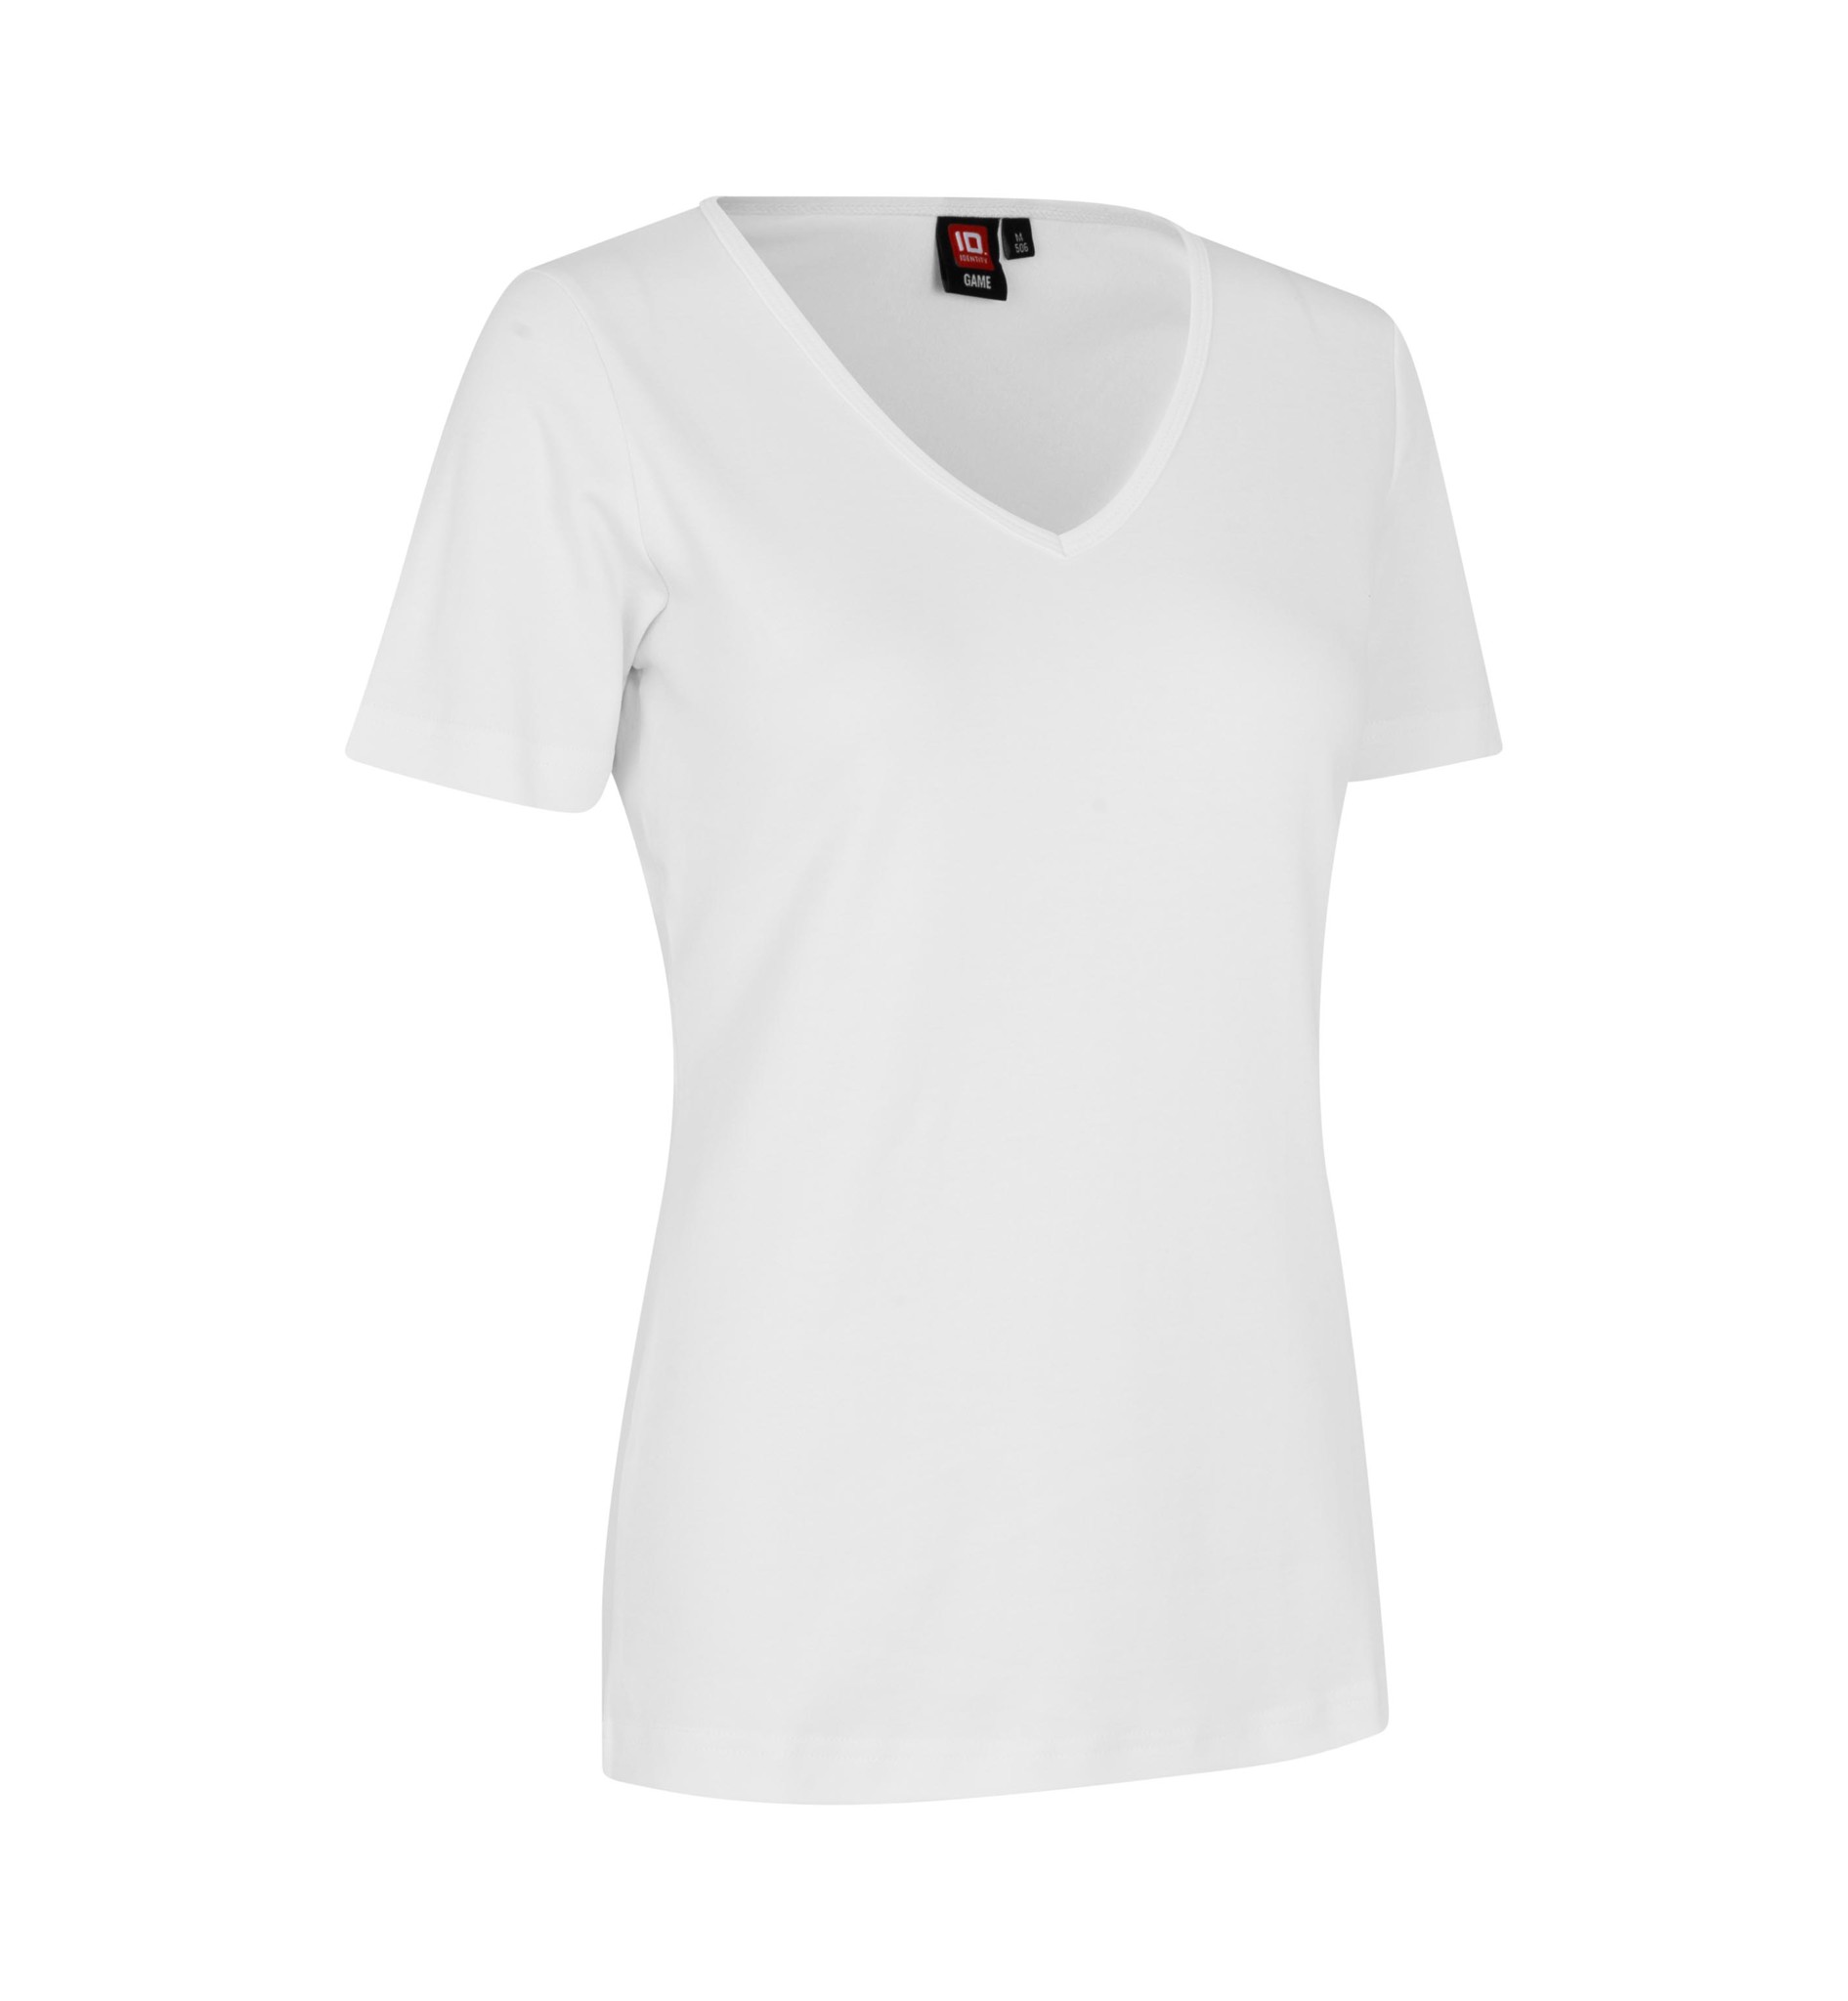 Damen T-Shirt workfashion - Interlock Heinzmann